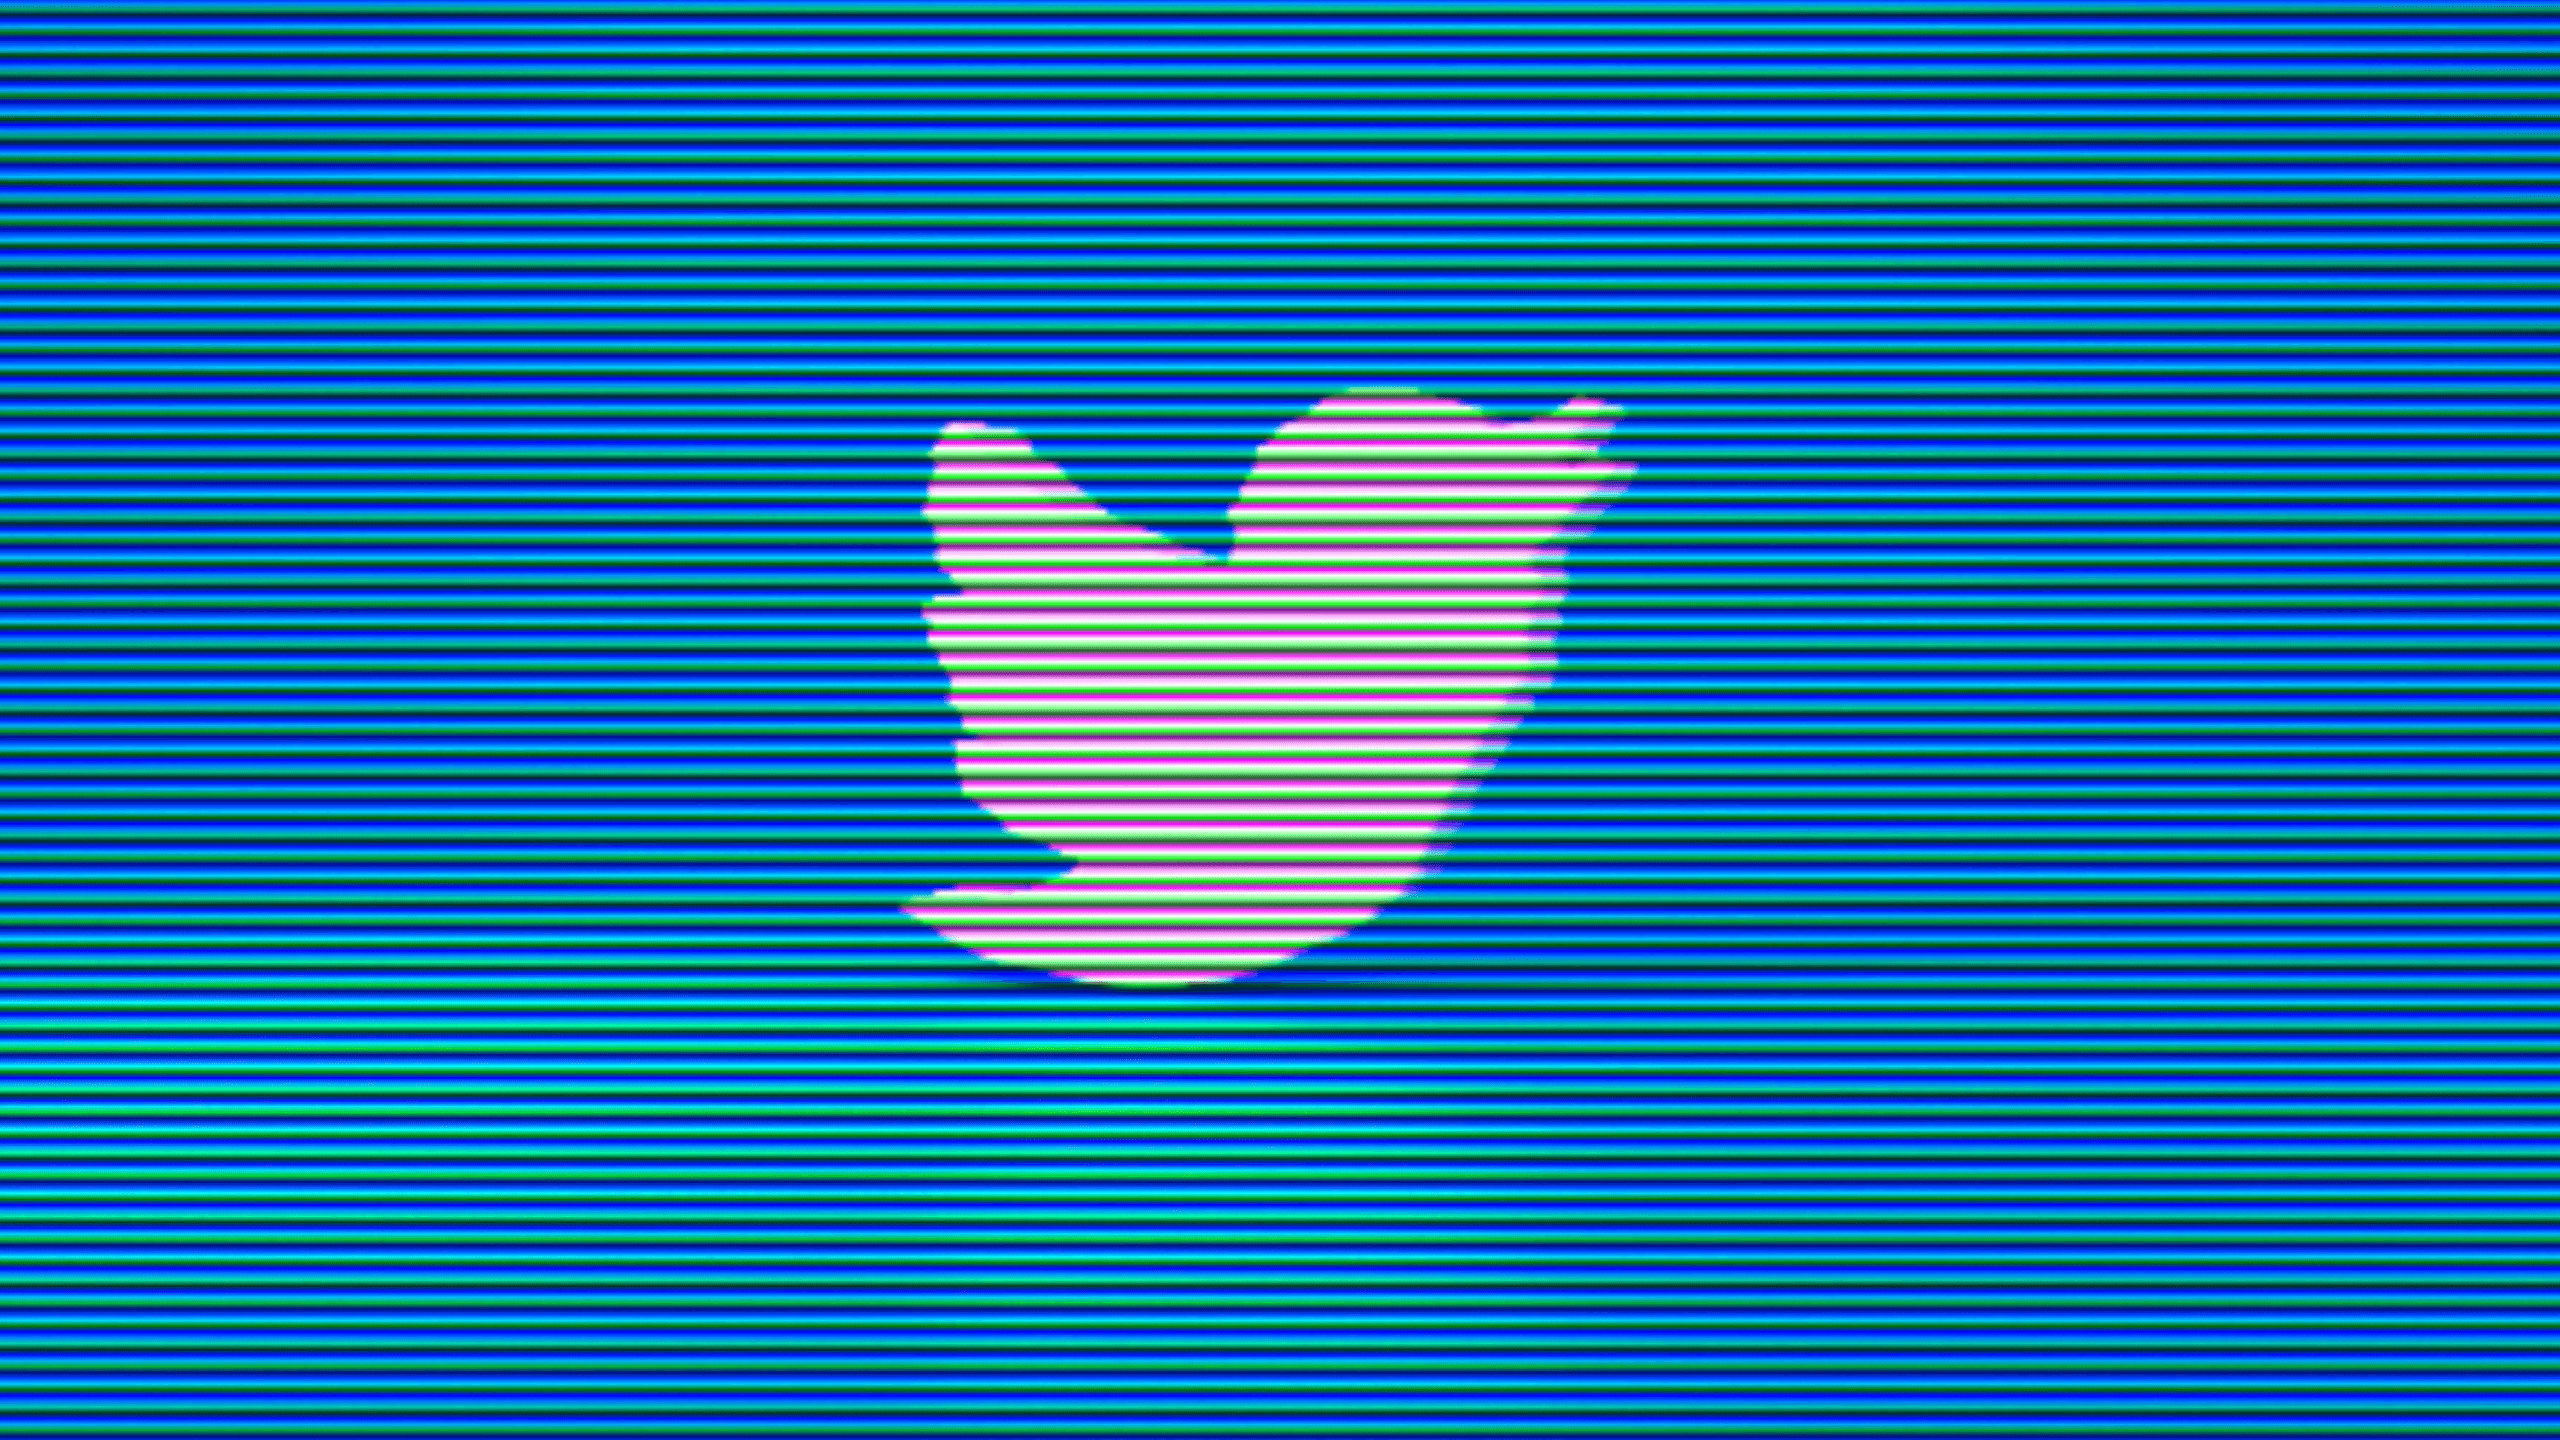 Викривач Twitter додає пікантності судовому процесу над Twitter та Ілоном Маском